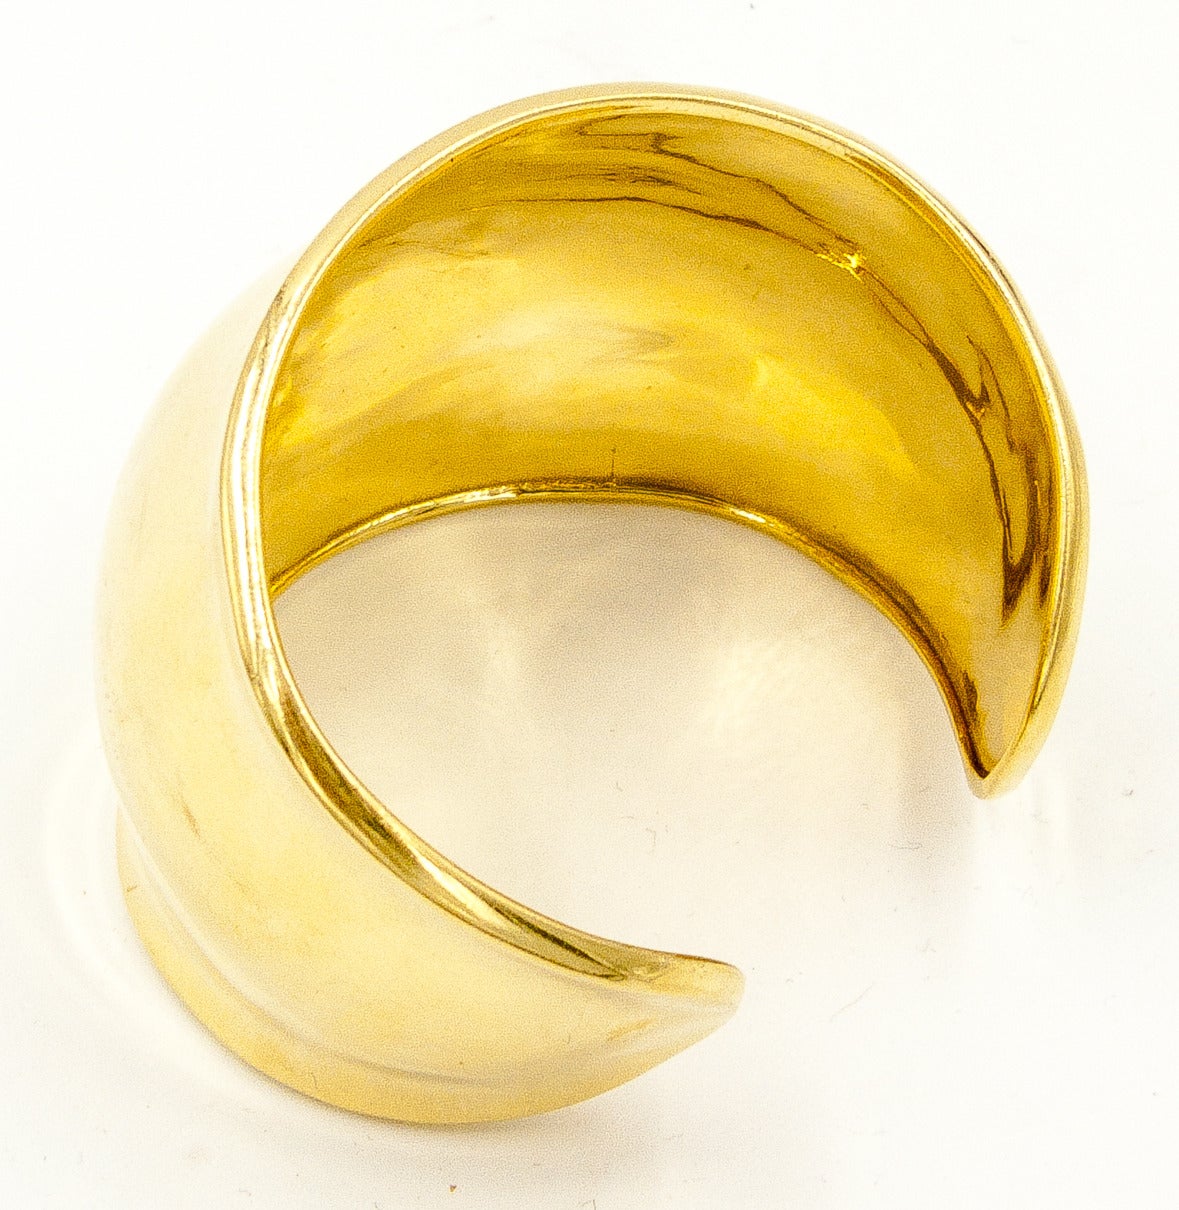 Modernist Boldly Sculptural Gold Cuff Bracelet